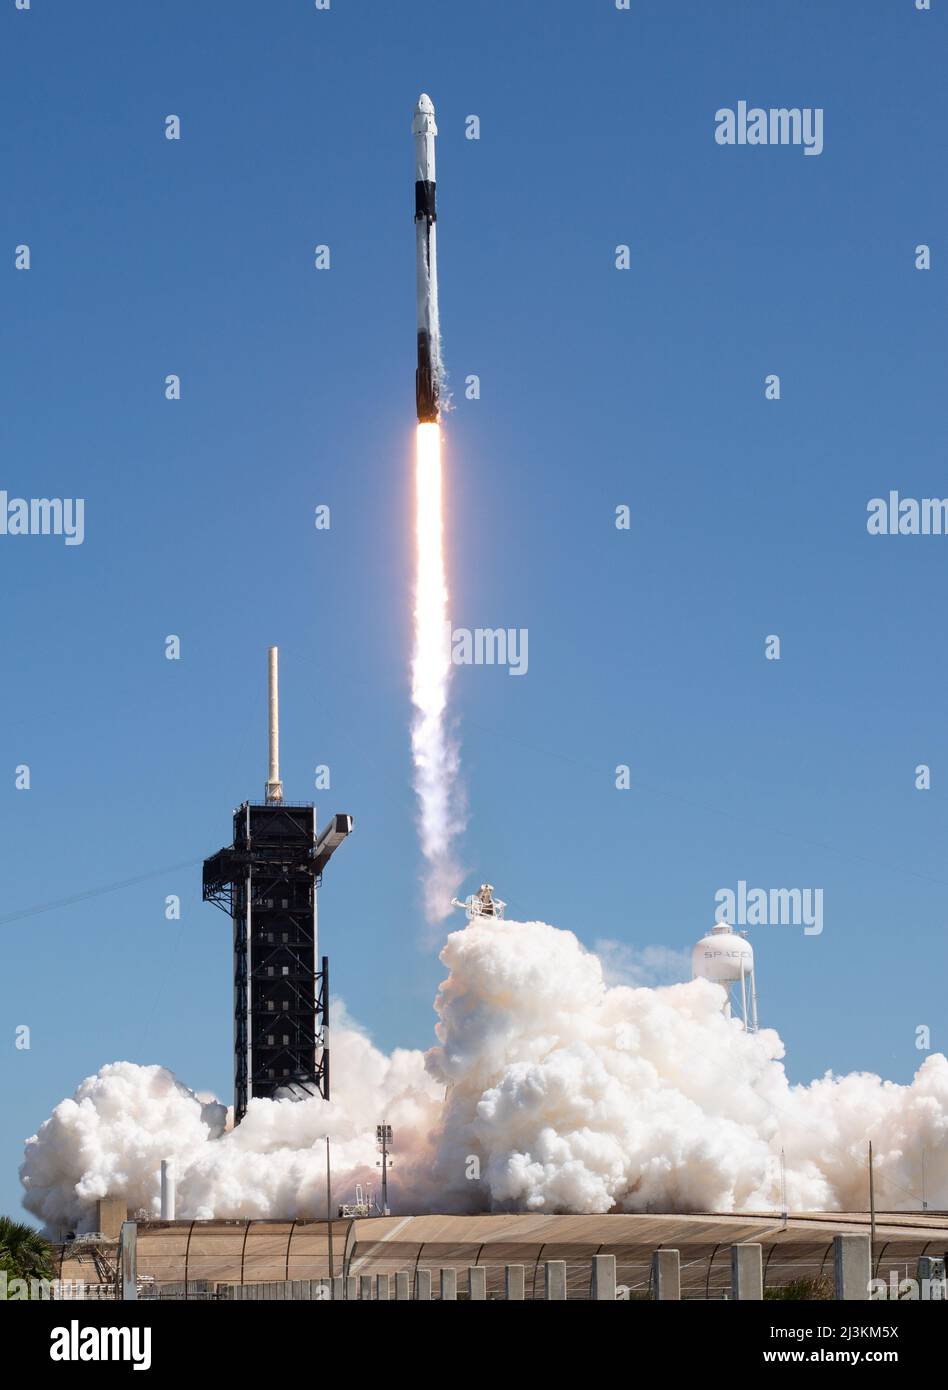 CENTRE SPATIAL KENNEDY - 06 avril 2022 - la fusée SLS (Space Launch System) de la NASA avec le vaisseau spatial Orion à bord est vue au sommet d'un lanceur mobile à laun Banque D'Images